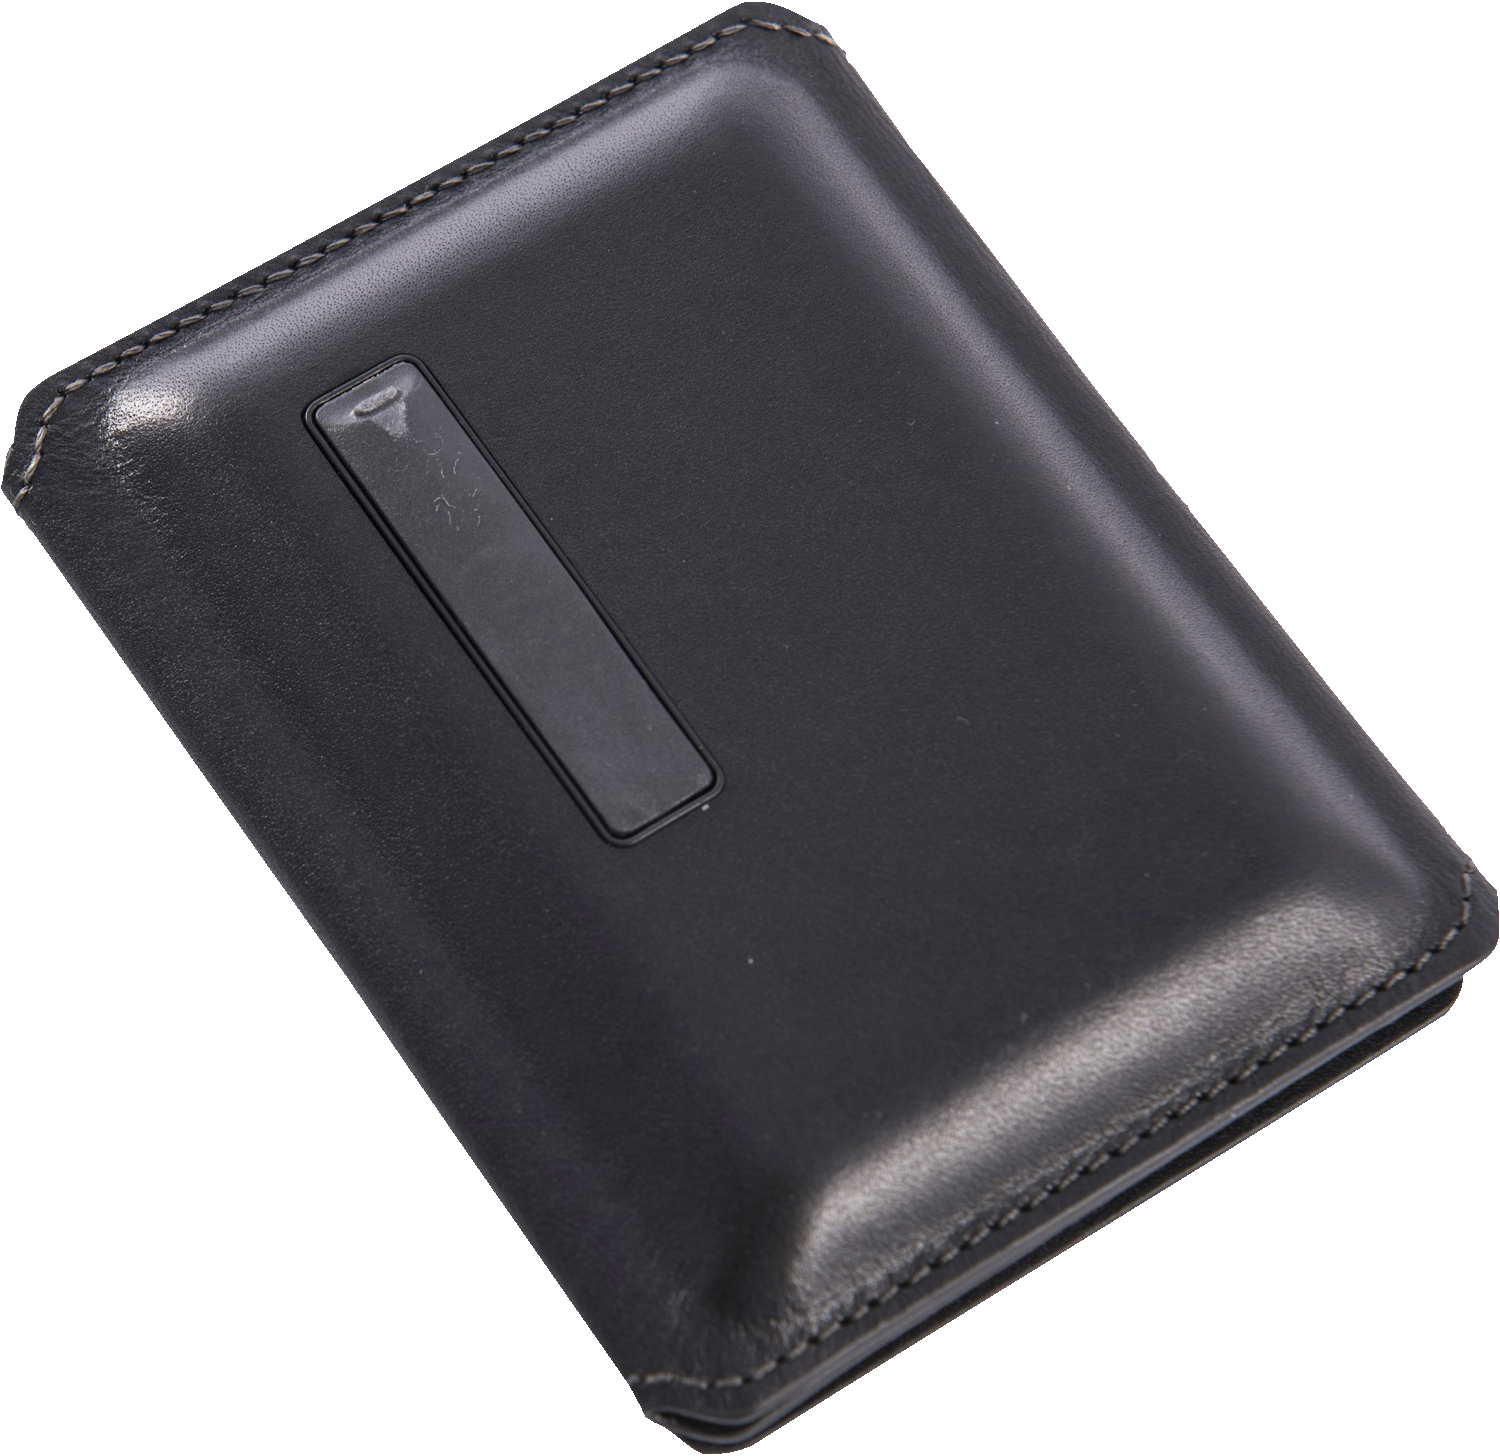 Seyvr smart lommebok med mikro-USB (sort) - Powerbank - Elkjøp